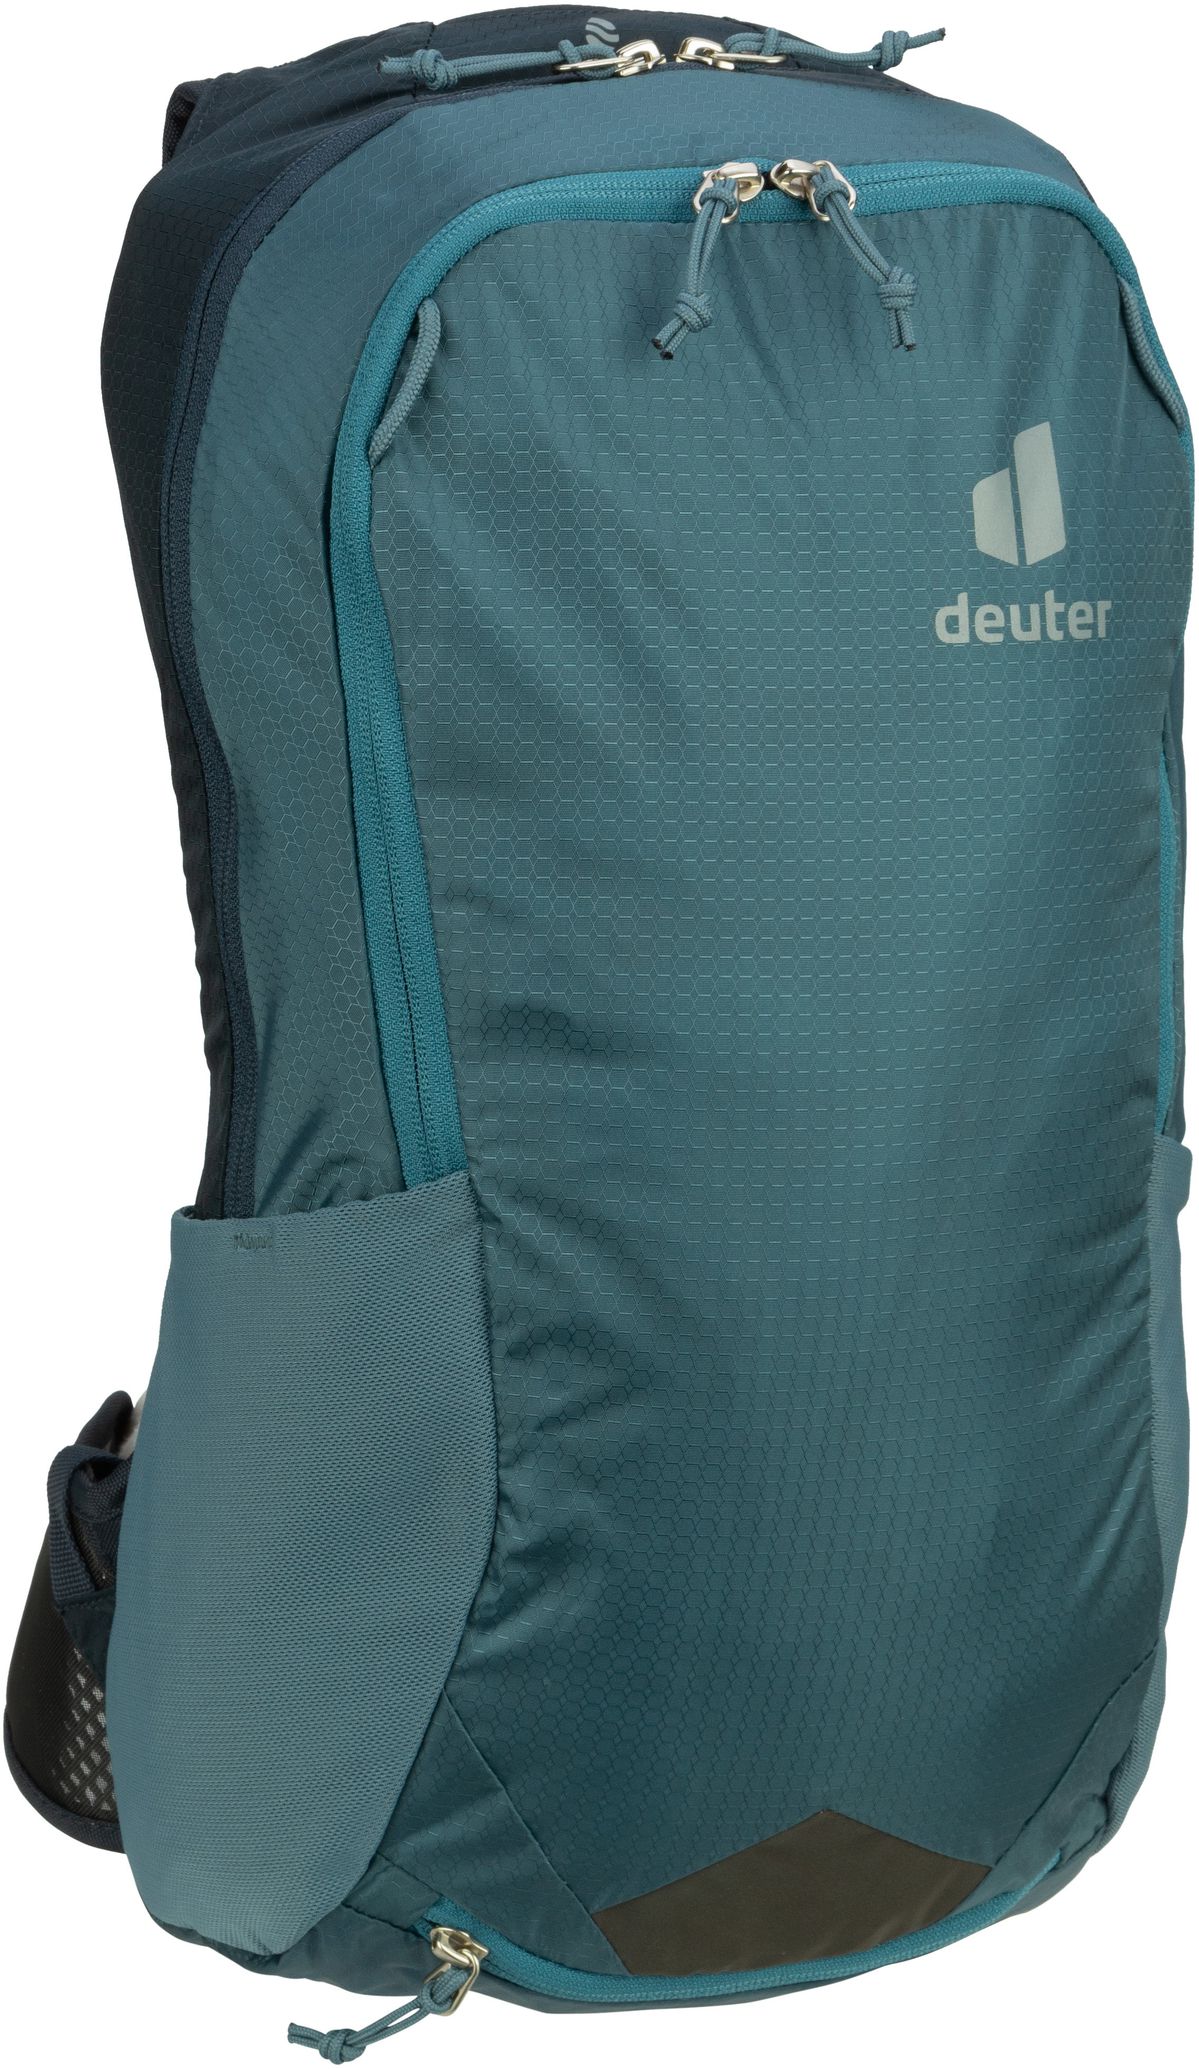 Deuter Deuter Race Air 10 in Blau (10 Liter), Rucksack / Backpack